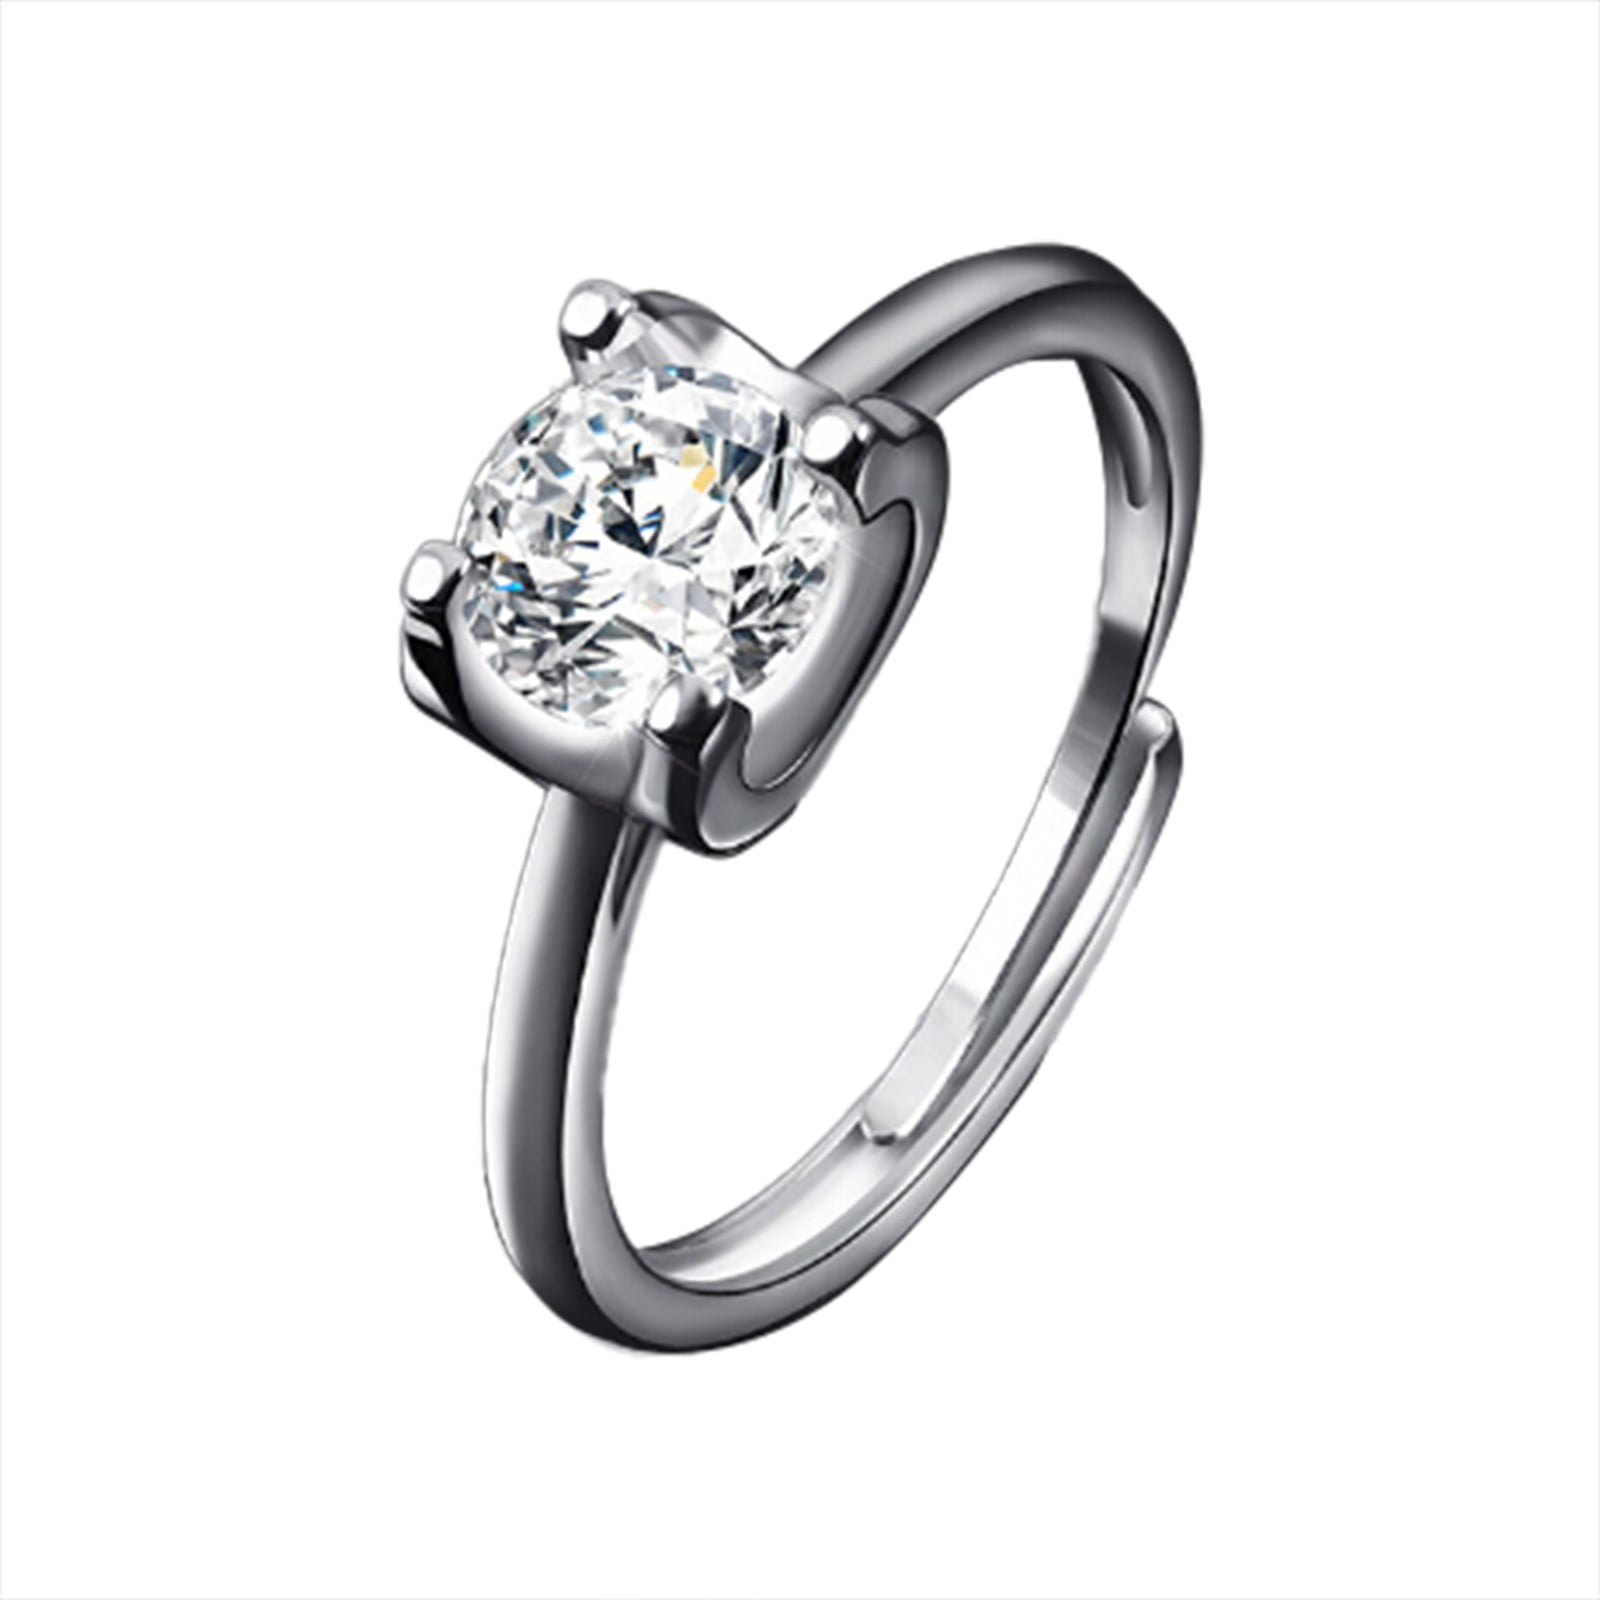 Buy quality Mesh Design Diamond Ring for Men in Pune